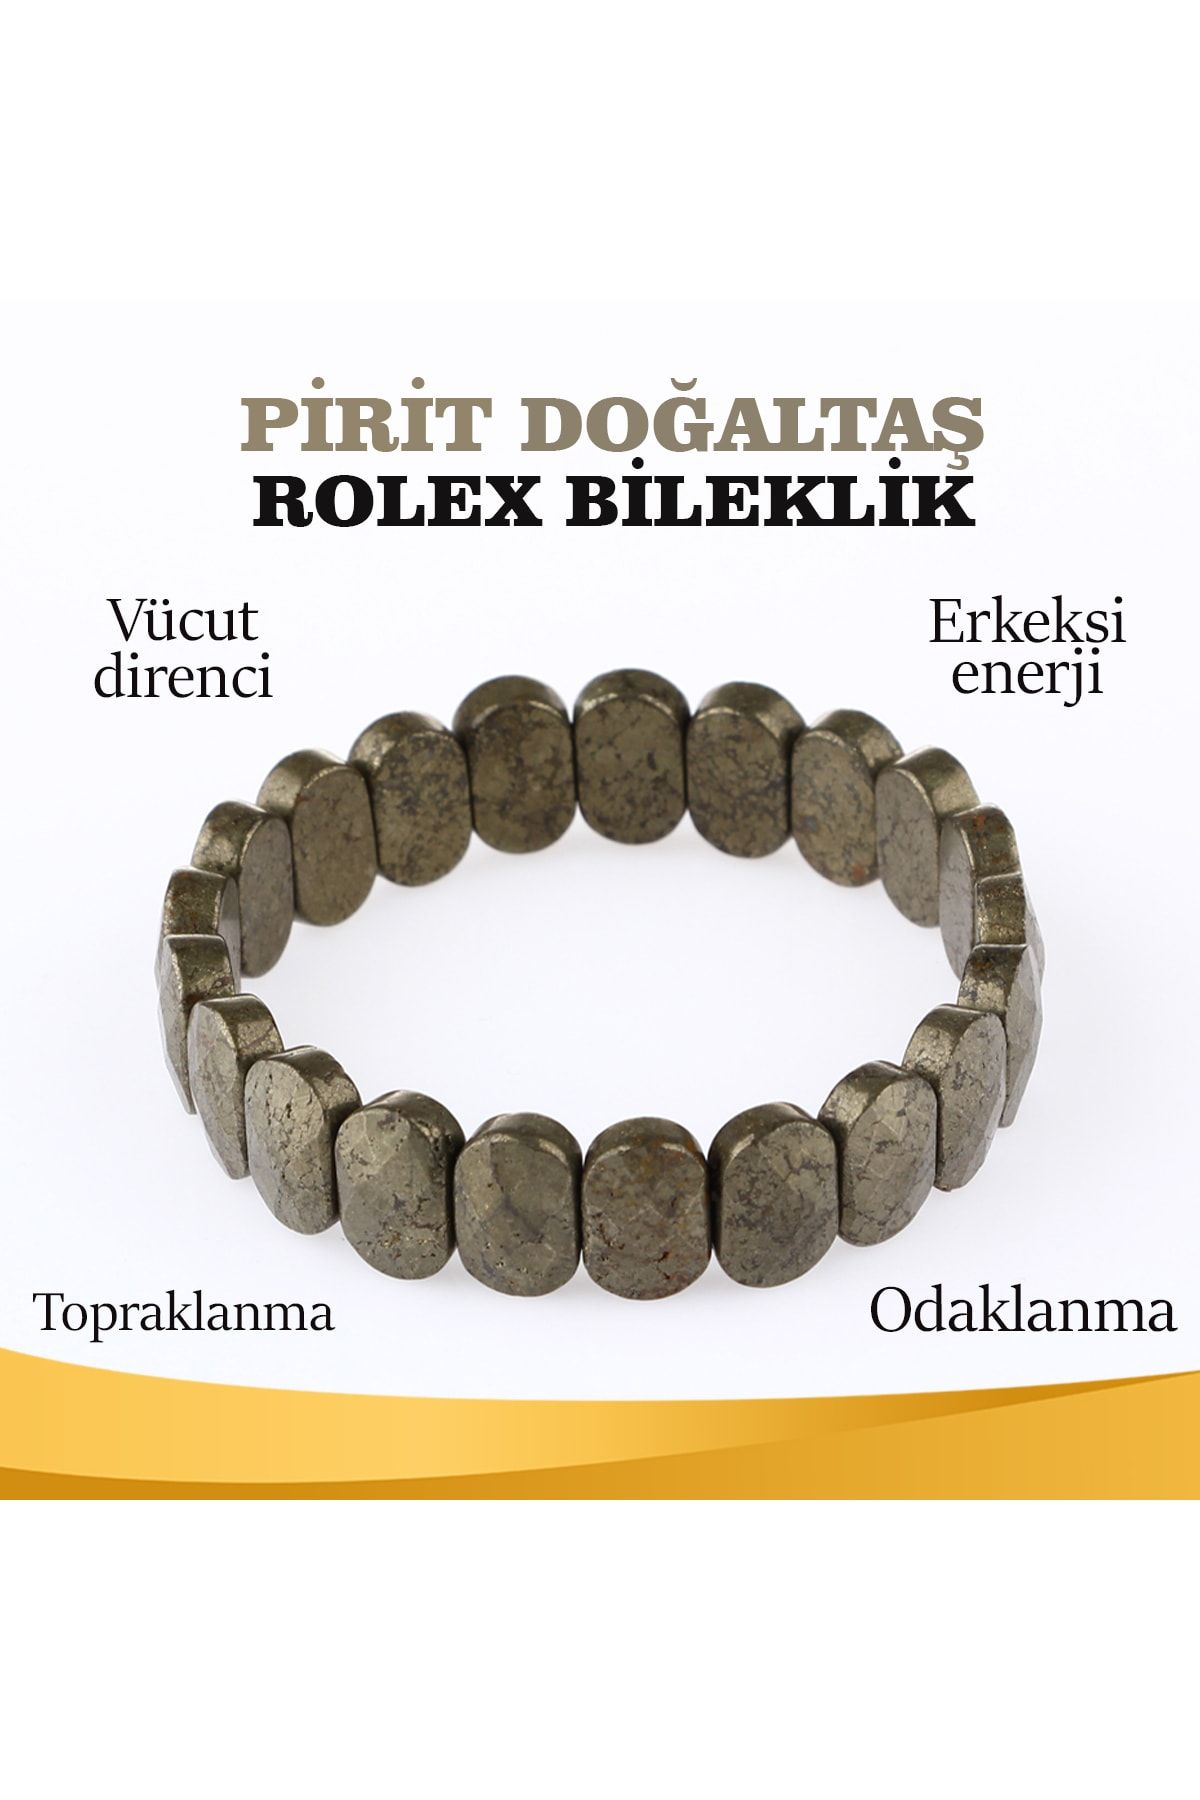 OSMANLI DOĞAL TAŞ Sertifikalı Pirit Doğaltaş Roleks Bileklik 15 Mm, B900